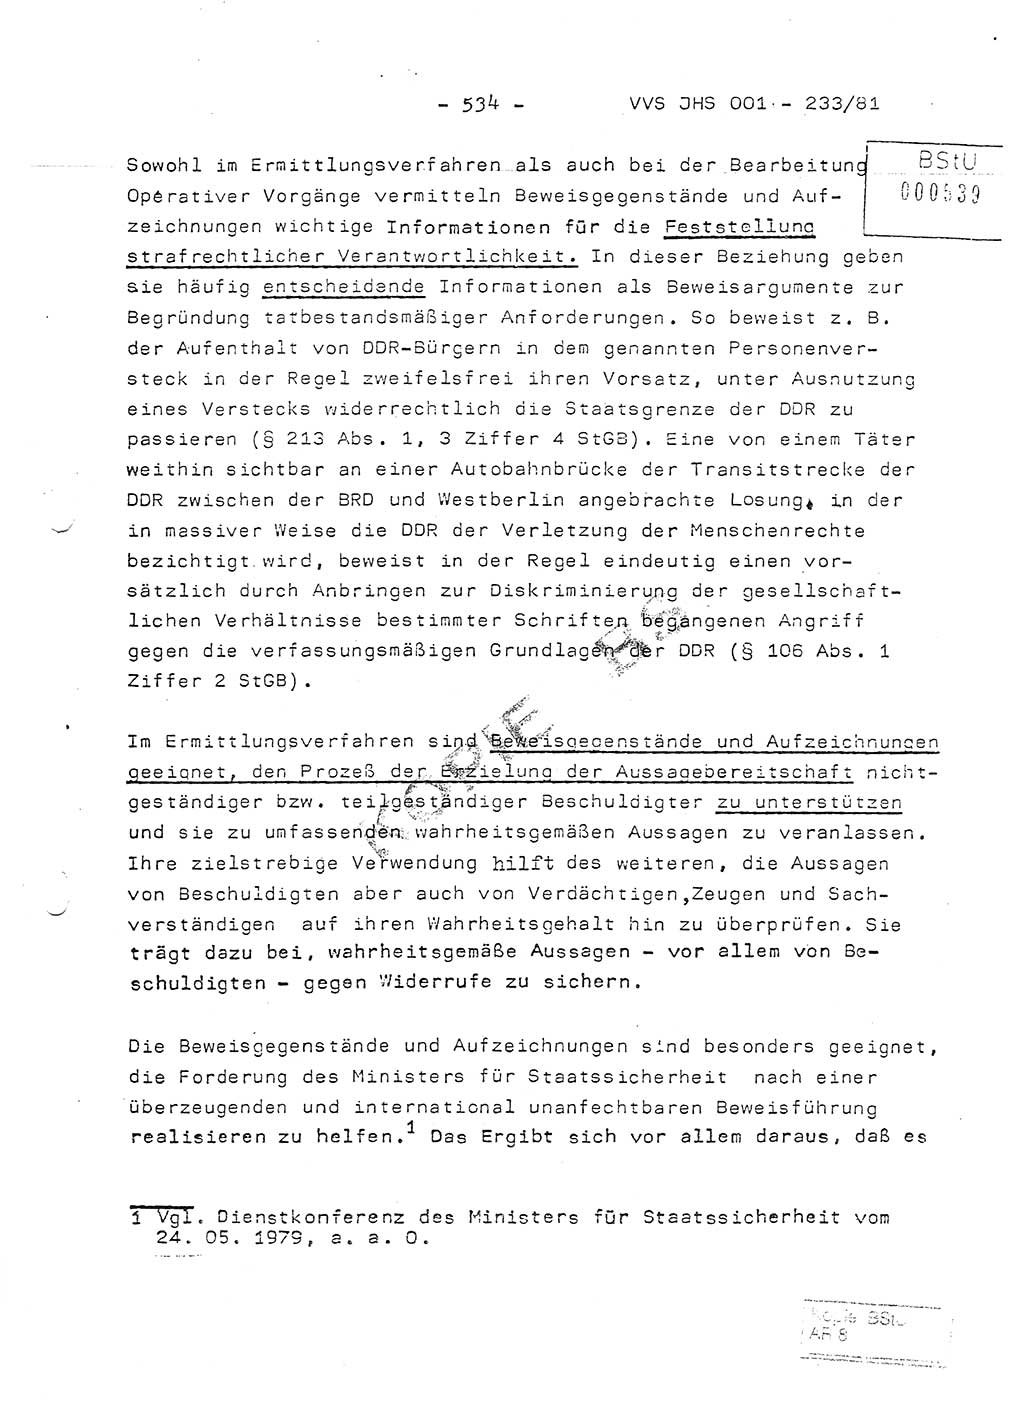 Dissertation Oberstleutnant Horst Zank (JHS), Oberstleutnant Dr. Karl-Heinz Knoblauch (JHS), Oberstleutnant Gustav-Adolf Kowalewski (HA Ⅸ), Oberstleutnant Wolfgang Plötner (HA Ⅸ), Ministerium für Staatssicherheit (MfS) [Deutsche Demokratische Republik (DDR)], Juristische Hochschule (JHS), Vertrauliche Verschlußsache (VVS) o001-233/81, Potsdam 1981, Blatt 534 (Diss. MfS DDR JHS VVS o001-233/81 1981, Bl. 534)